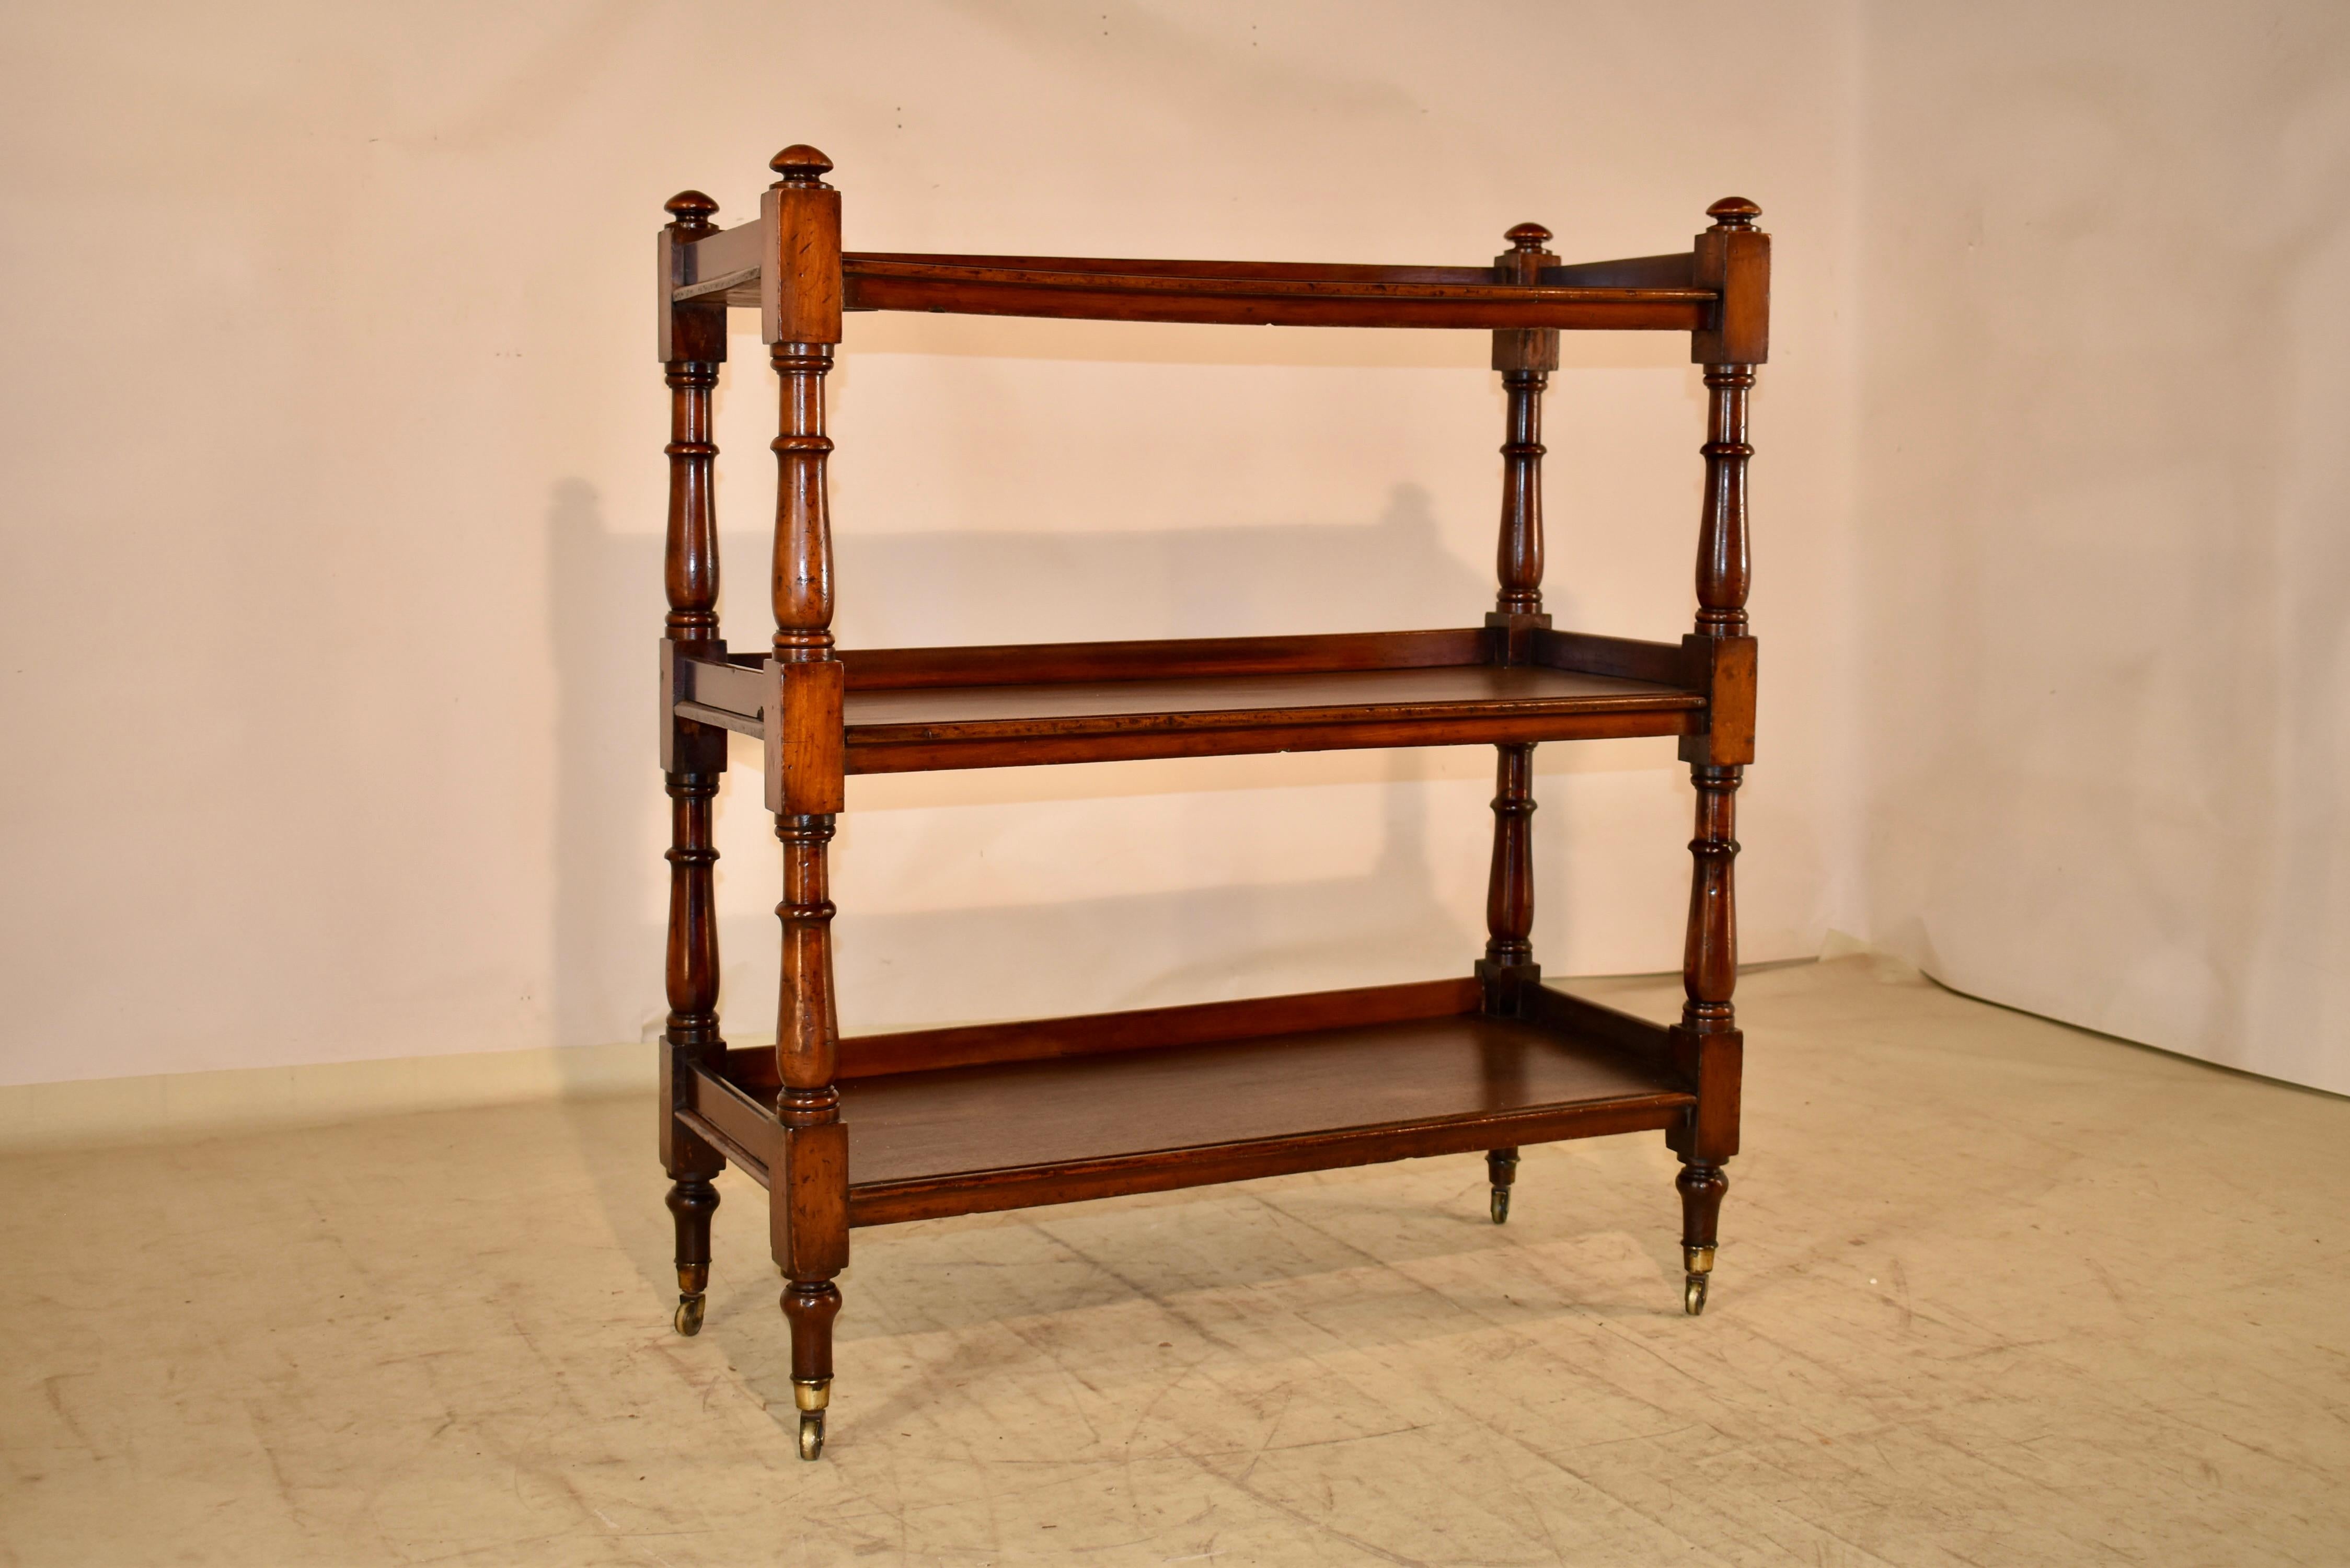 Englisches Dessertbuffet aus dem 19. Jahrhundert aus Mahagoni.  Das Möbelstück hat oben einen Abschluss über drei Regalböden, die an drei Seiten mit Galerien versehen sind.  Die Regalstützen sind handgedreht.  Die Schürzen unter den Regalen haben